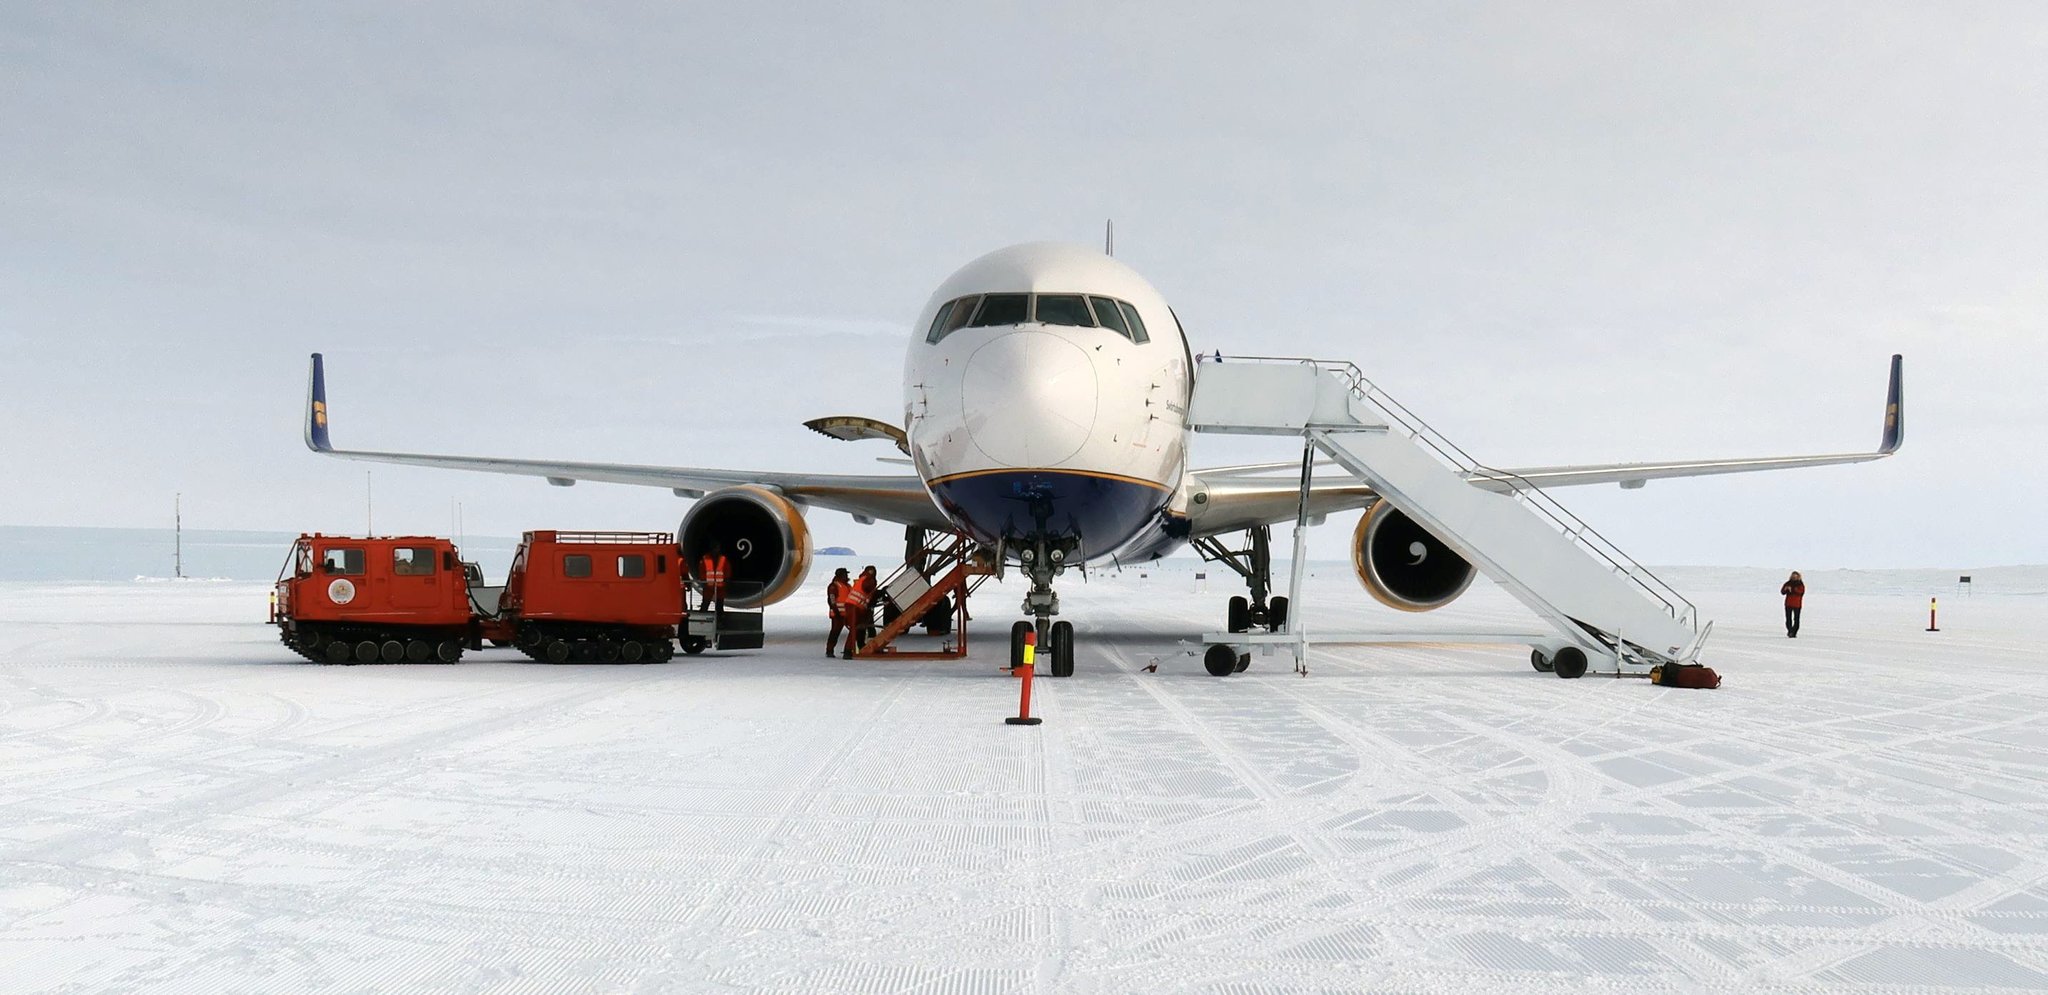 Boeing 767 in Antarctica - Aviation, Antarctica, Boeing 767, Landing, Snow, Video, Longpost